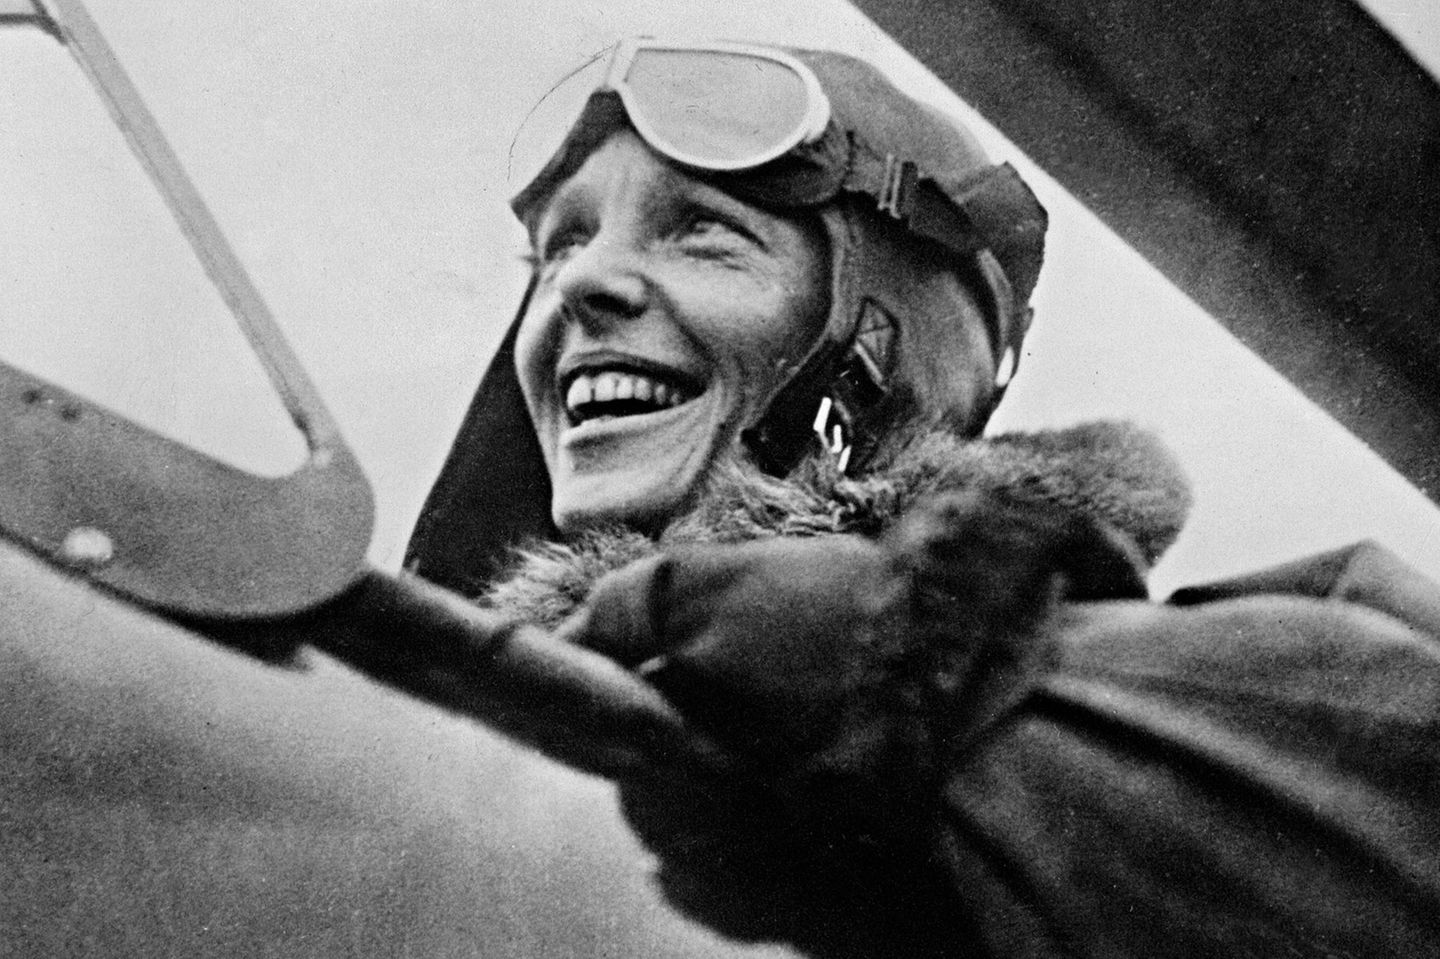 Sie überquert allein in ihrem Cockpit den Atlantik, fliegt als erster Mensch ohne Begleitung von Hawaii zum Festland der USA und von Los Angeles nach Mexiko City. 1937 startet sie zu einer hochriskanten Erdumrundung